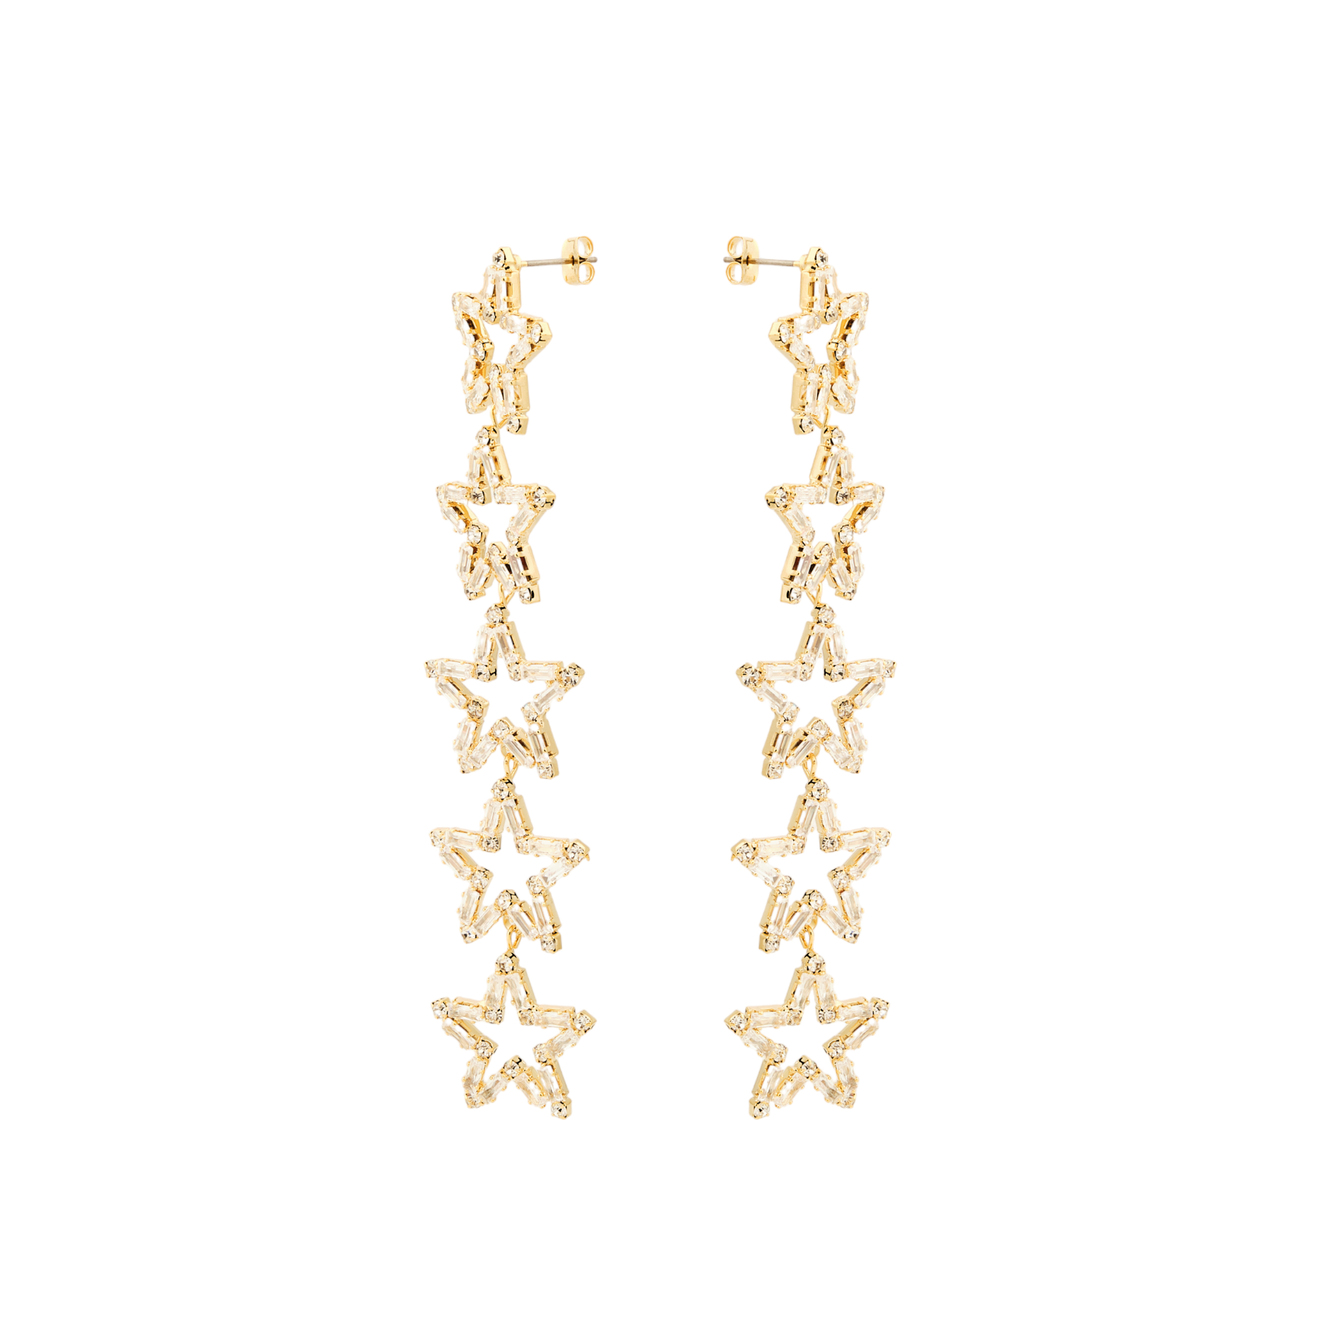 Herald Percy Золотистые длинные серьги с звездами с кристаллами lisa smith золотистые длинные серьги с двумя кристаллами